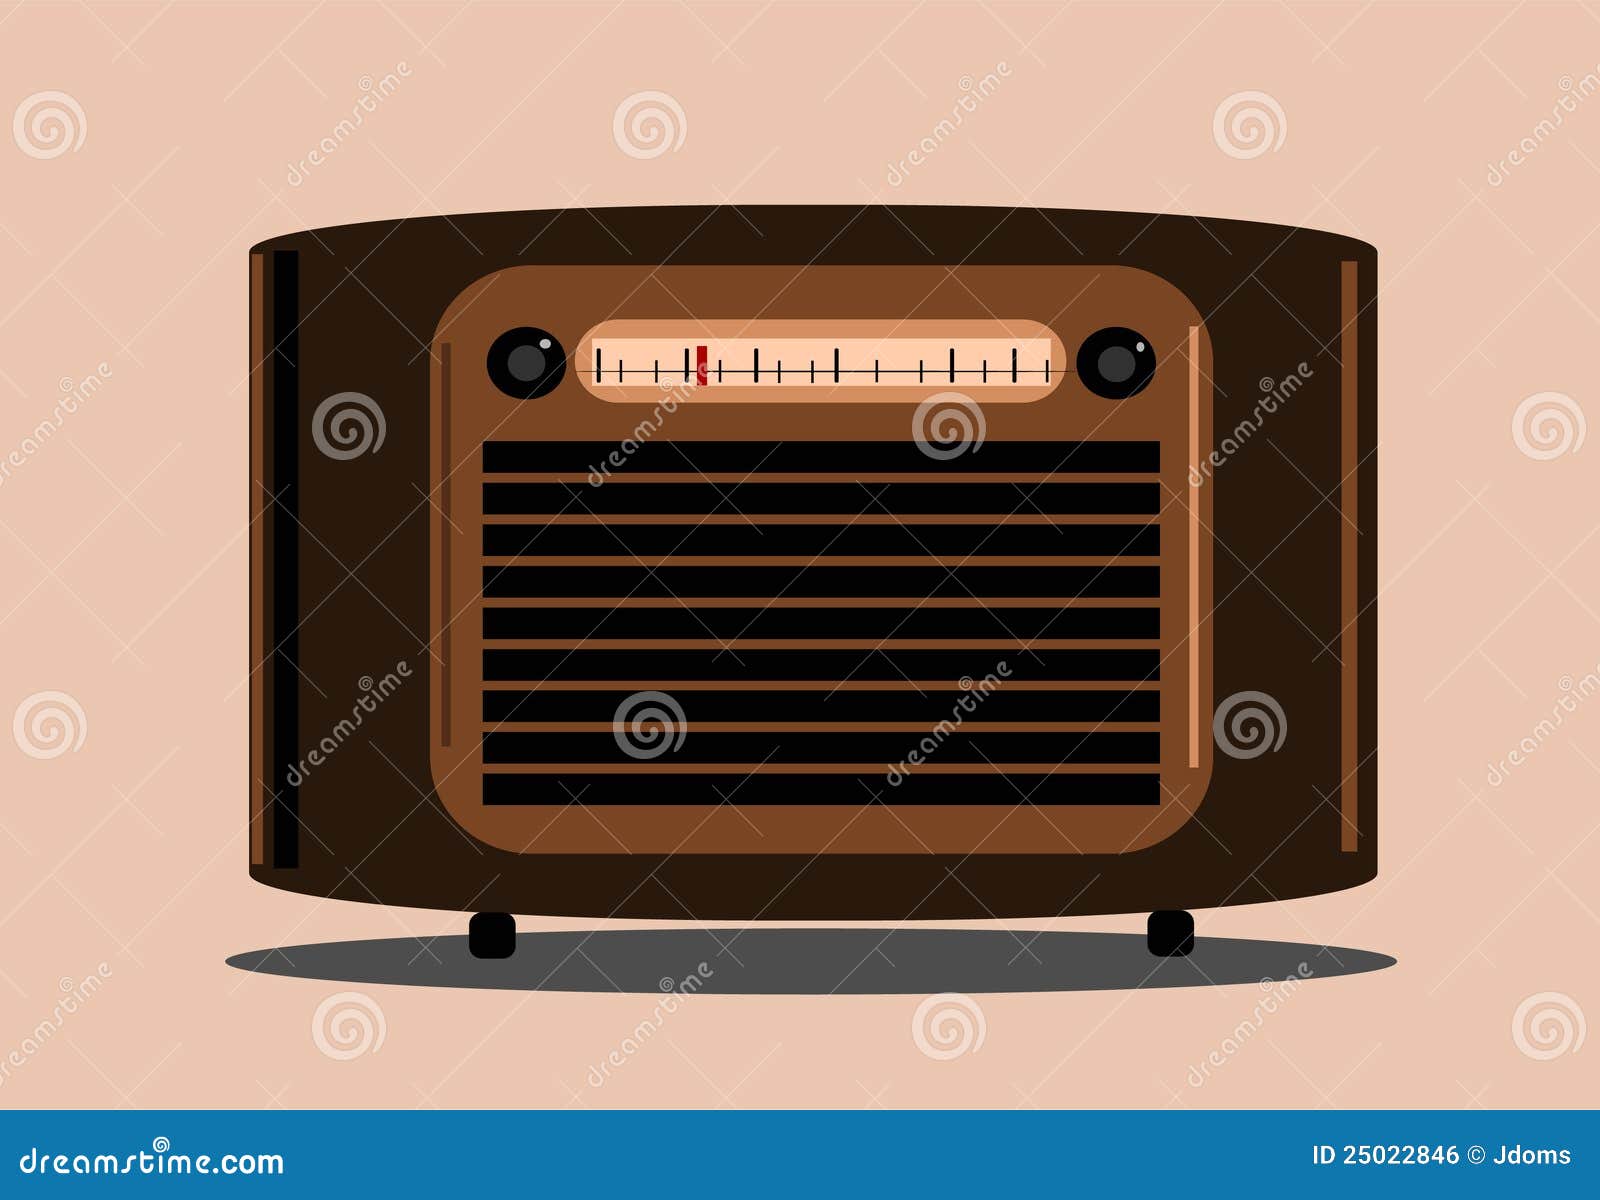 Download Radio, Retro Radio, Vintage Radio. Royalty-Free Vector